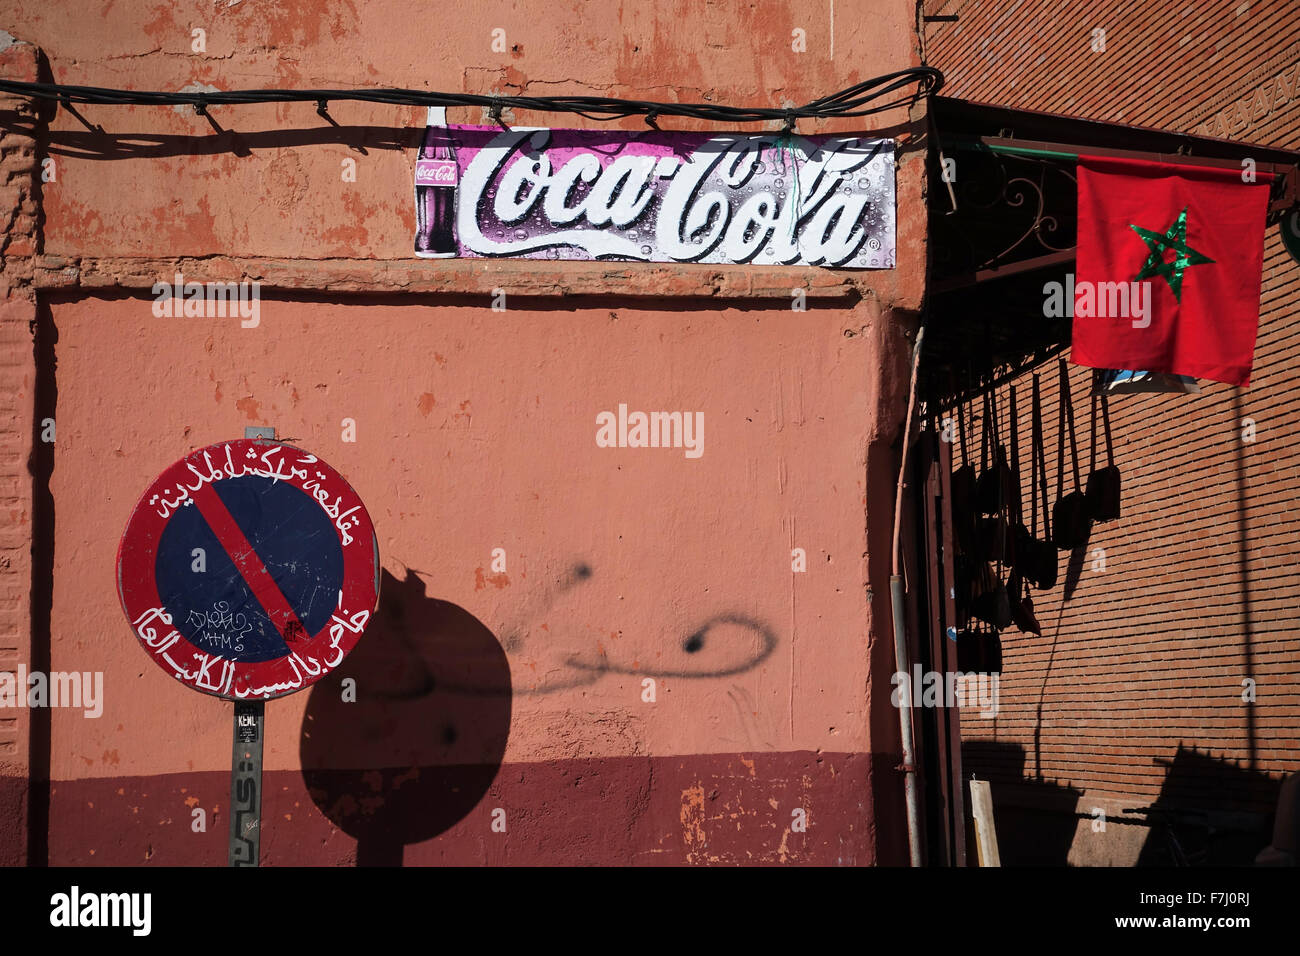 Marrakesch, Marokko. 7. November 2015. Die Coca-Cola-Bezeichnung auf eine Mauer zwischen ein Stop-Schild und die marokkanische Flagge in der alten Stadt Marrakesch, Marokko, 7. November 2015. Foto: Jens Kalaene - NO-Draht-SERVICE-/ Dpa/Alamy Live News Stockfoto